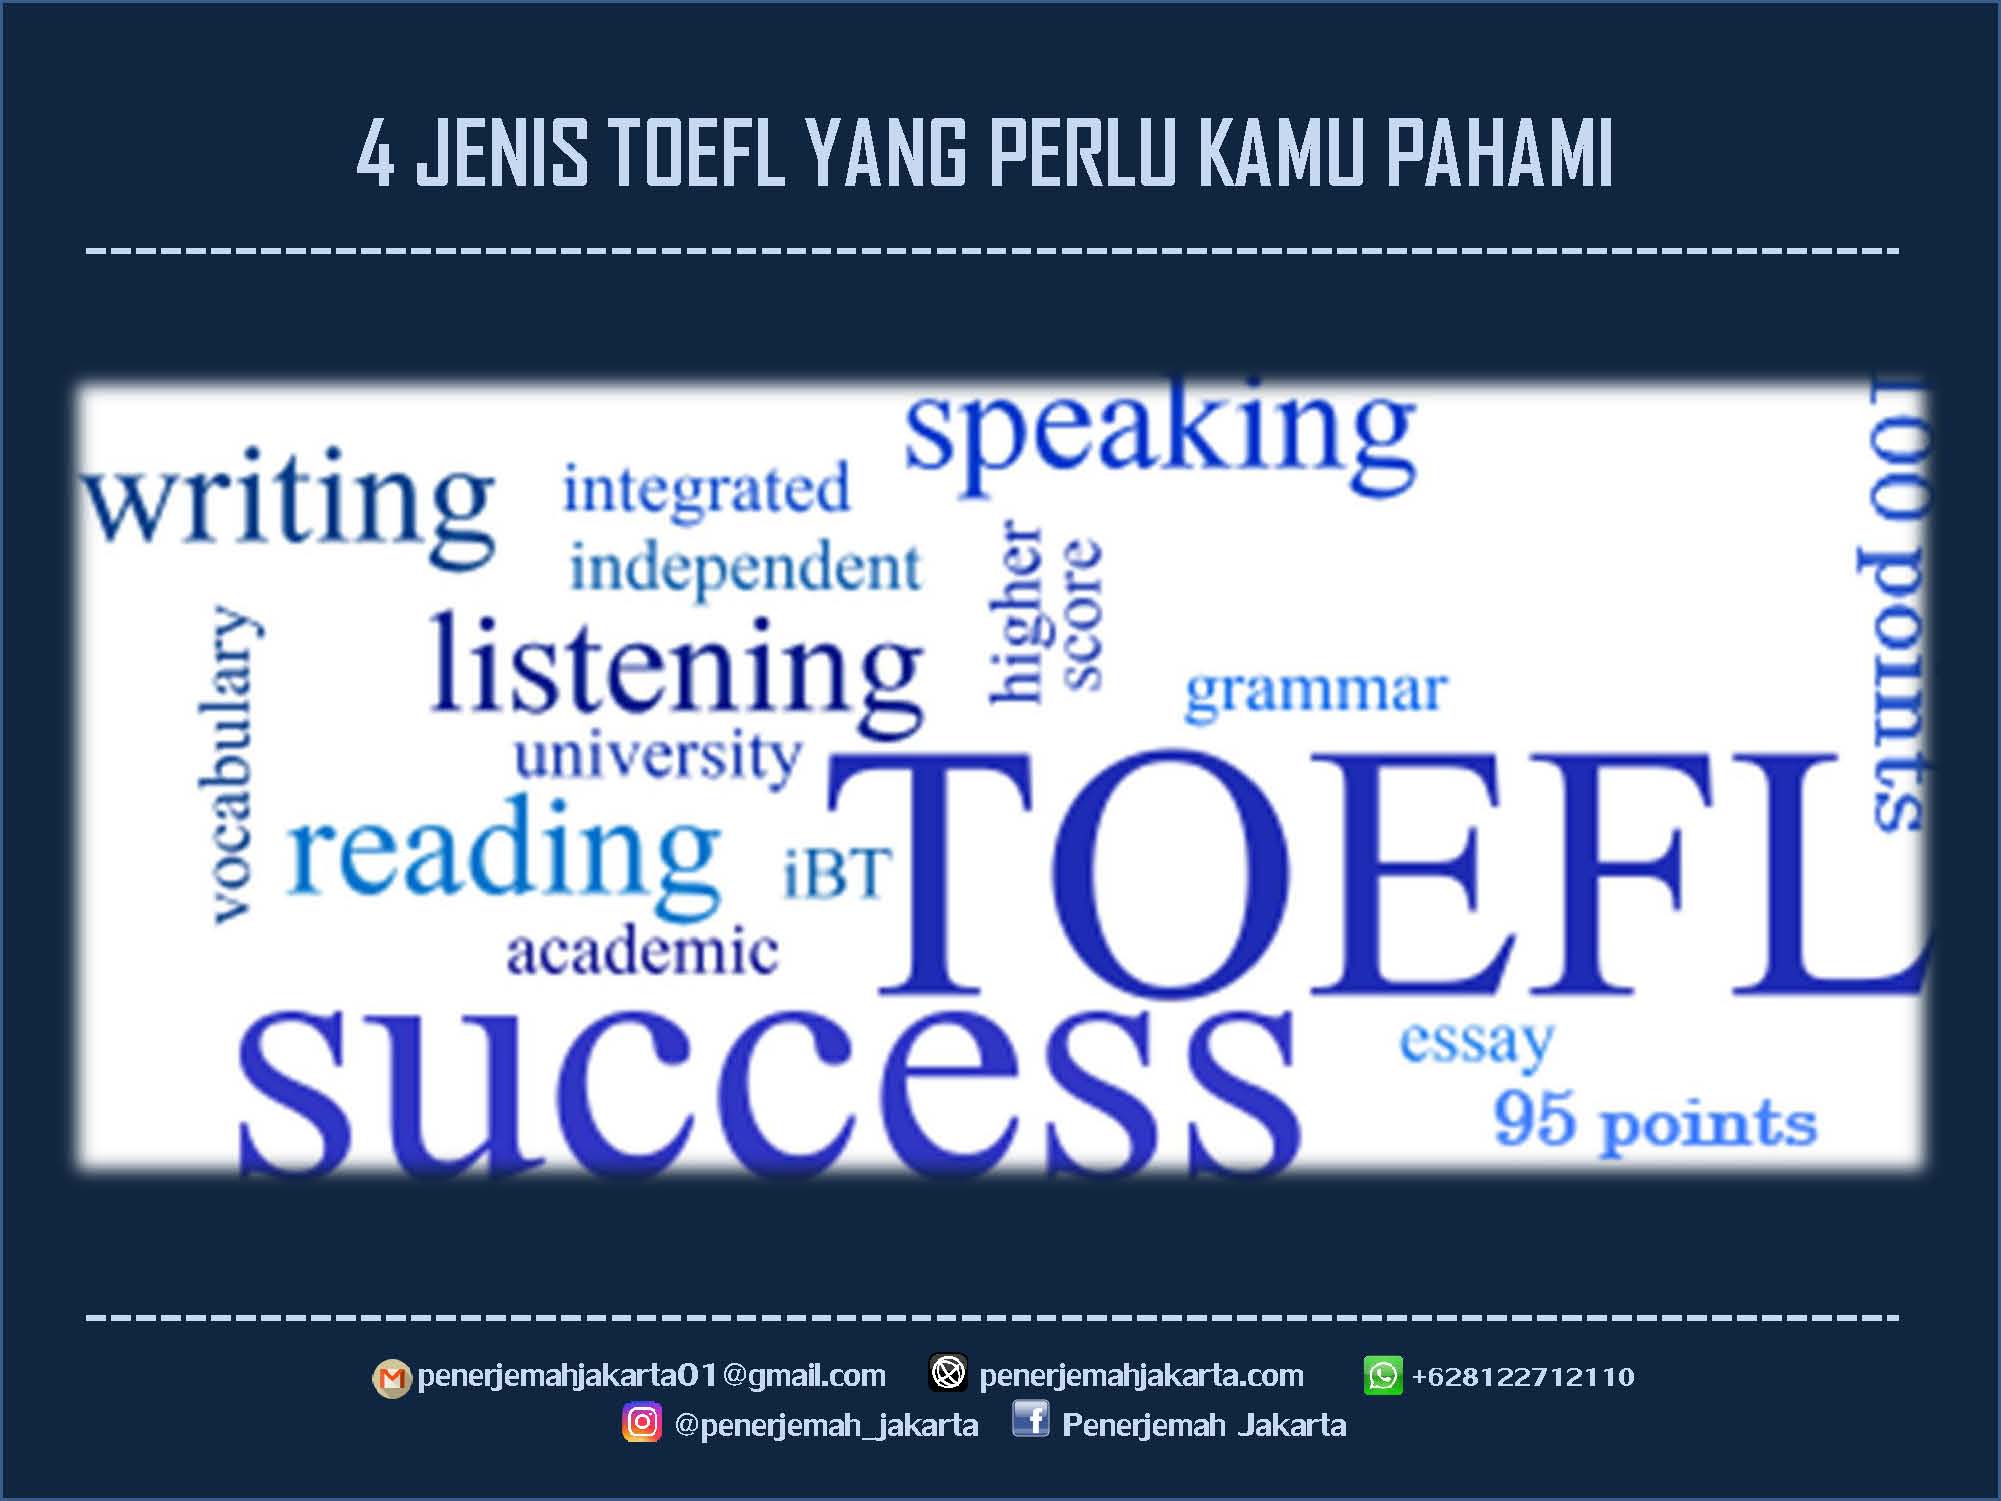 Jenis TOEFL yang Perlu Kamu Tahu